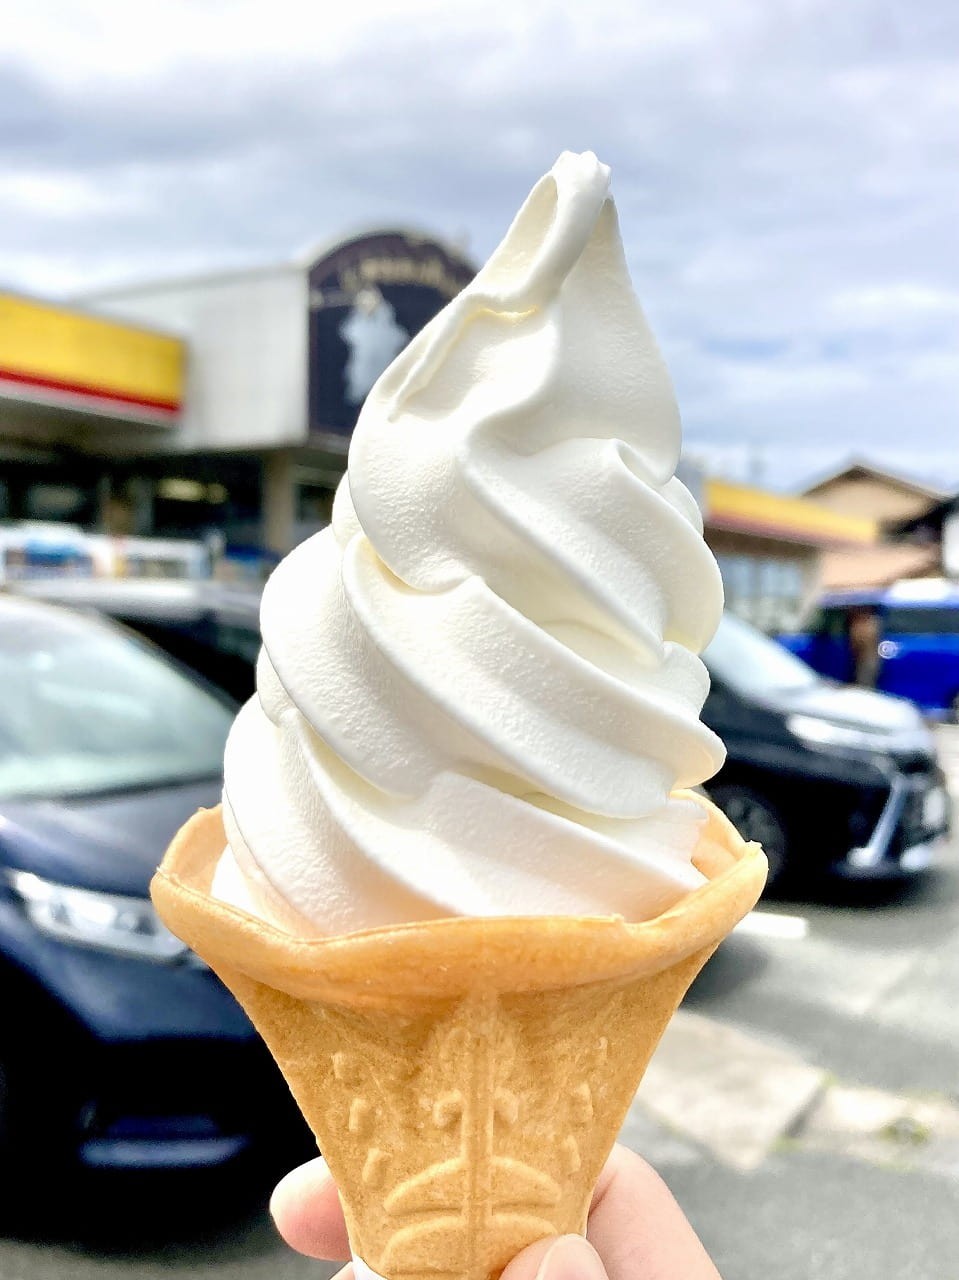 島根県江津市のドライブステーション『神楽の里 舞乃市』で買えるソフトクリーム